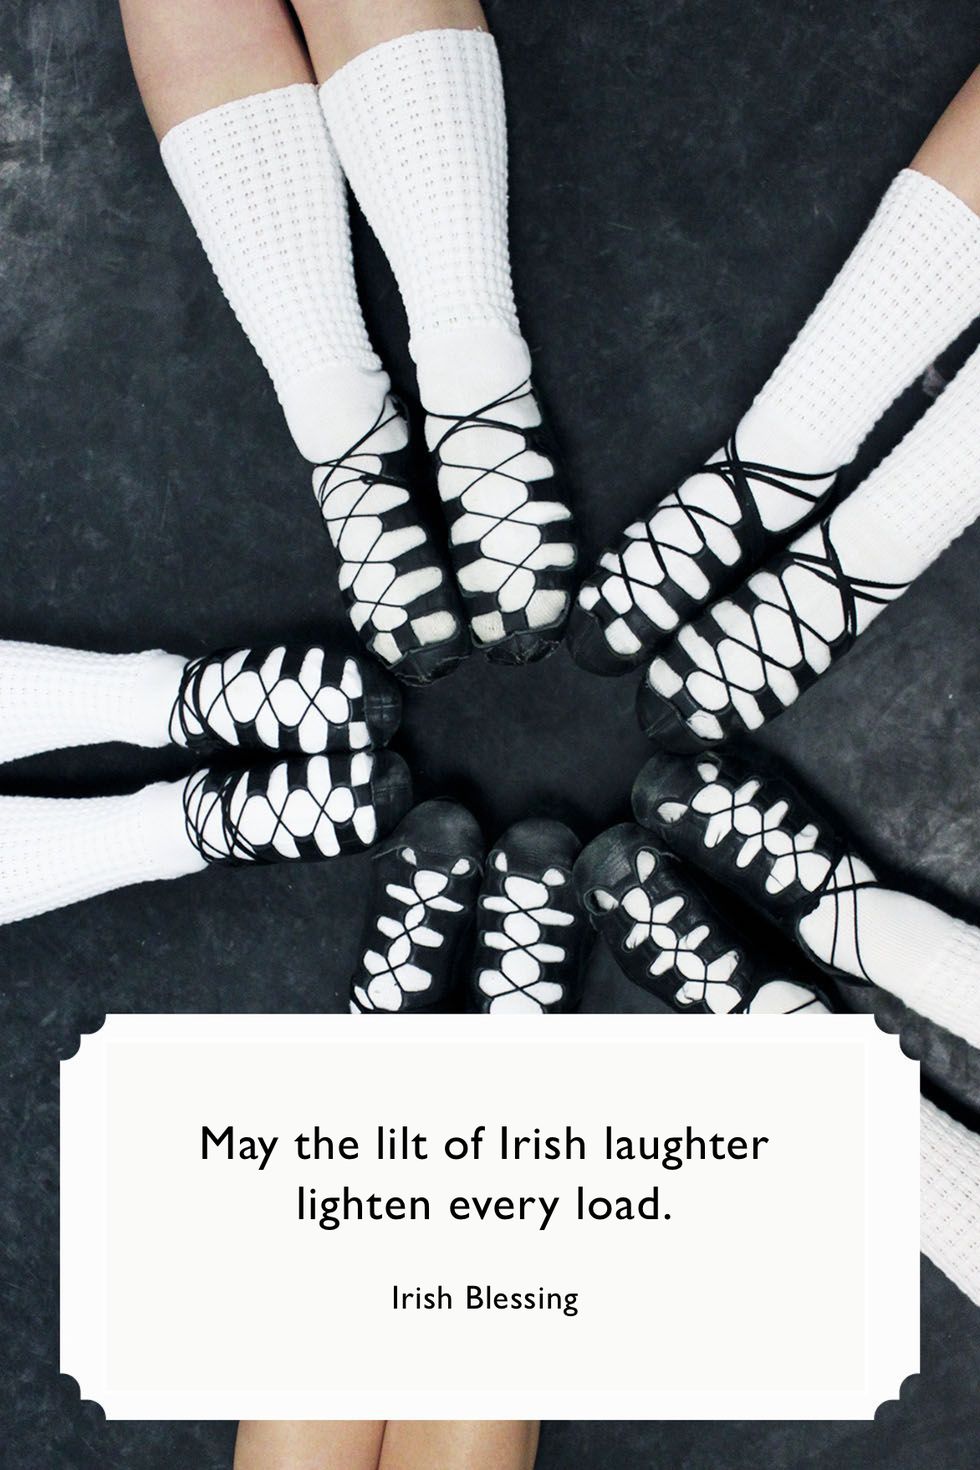 100 Best St. Patrick's Day Quotes: Irish Sayings, Irish Blessings